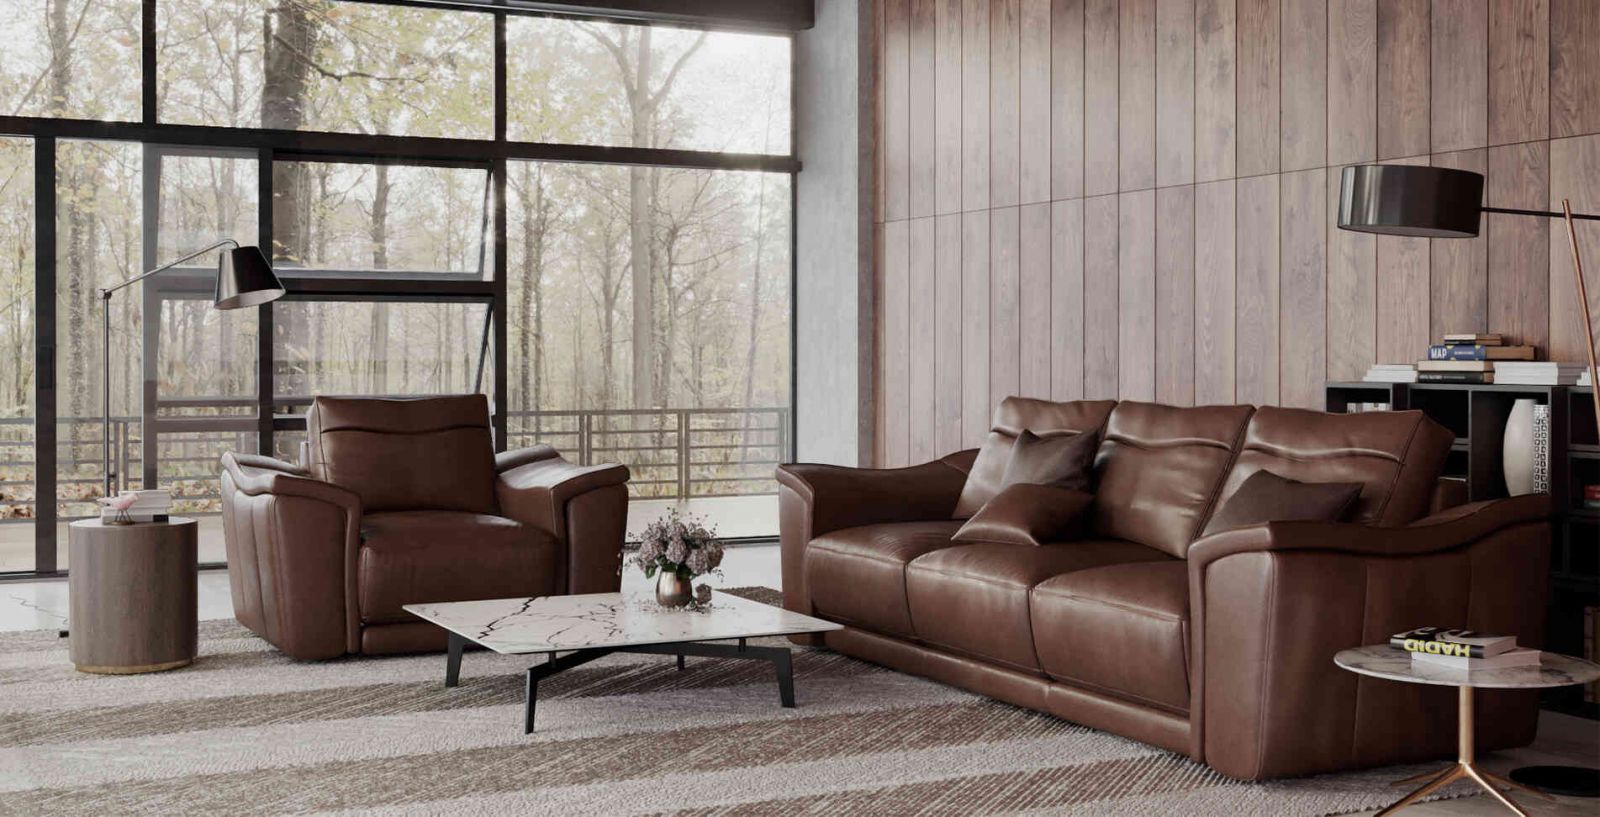 Sự kết hợp hoàn hảo giữa kiểu dáng hiện đại và chất liệu da agay đã tạo nên chiếc sofa da agay EE27 độc đáo. Với độ bền cao và đẹp mắt, chiếc sofa này sẽ làm hài lòng bất kỳ ai yêu thích phong cách sang trọng và đẳng cấp.